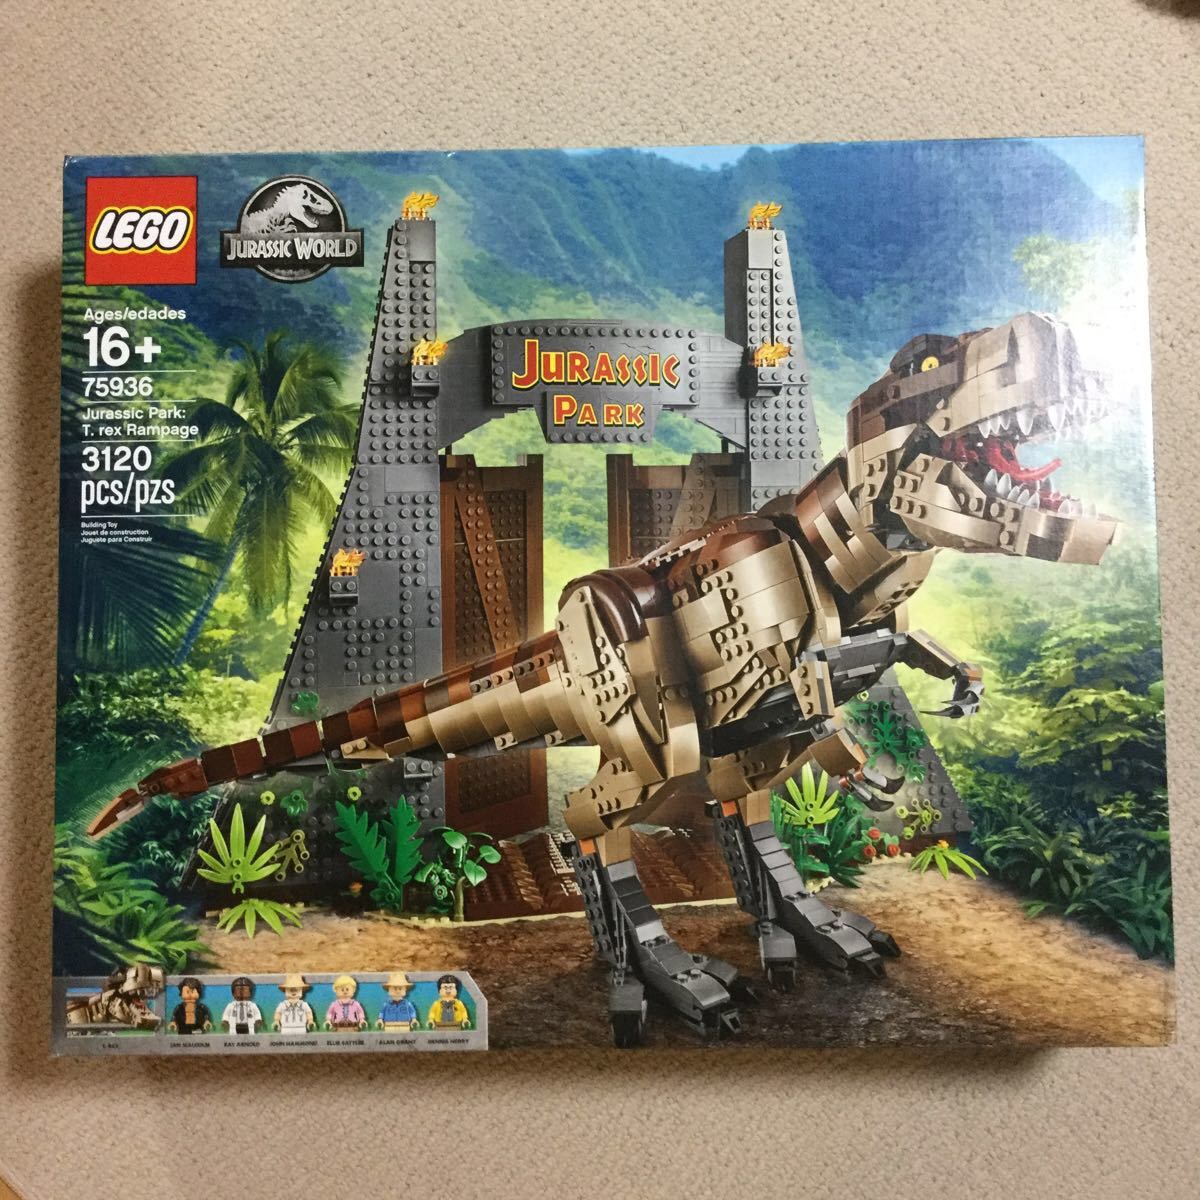 NEW LEGO Jurassic World Jurassic Park: T. rex Rampage Building Kit 75936